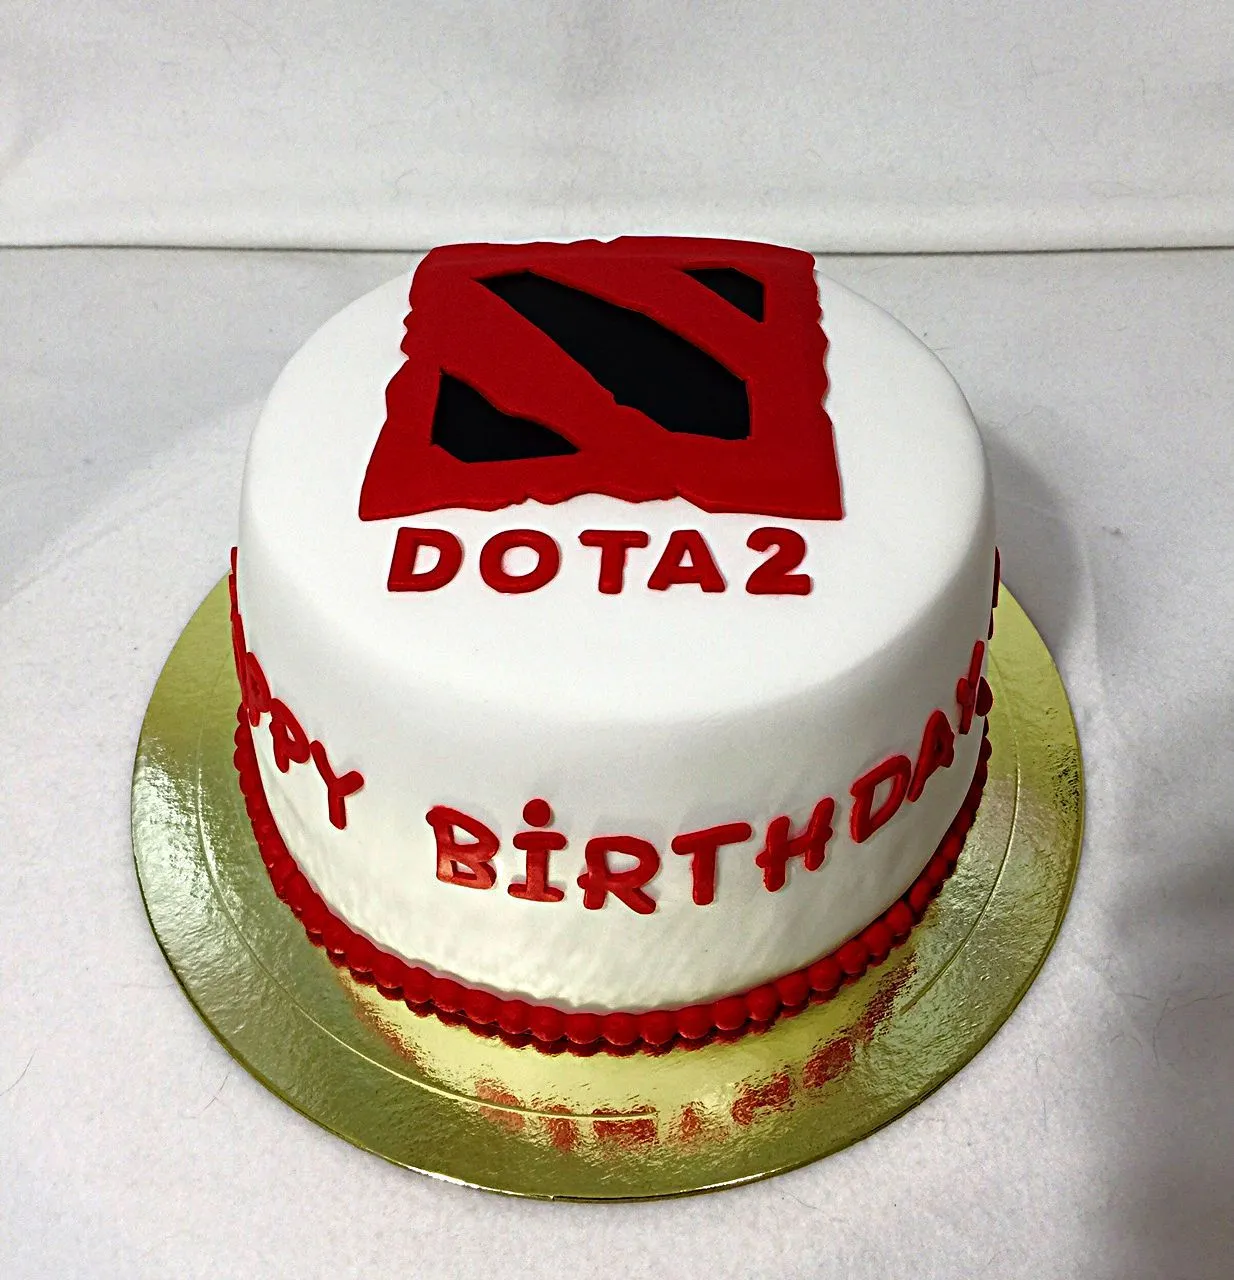 Поздравление дота 2. Торт дота. Торт дота 2. Торт в стиле Dota 2. Дота 2 торт на день рождения.